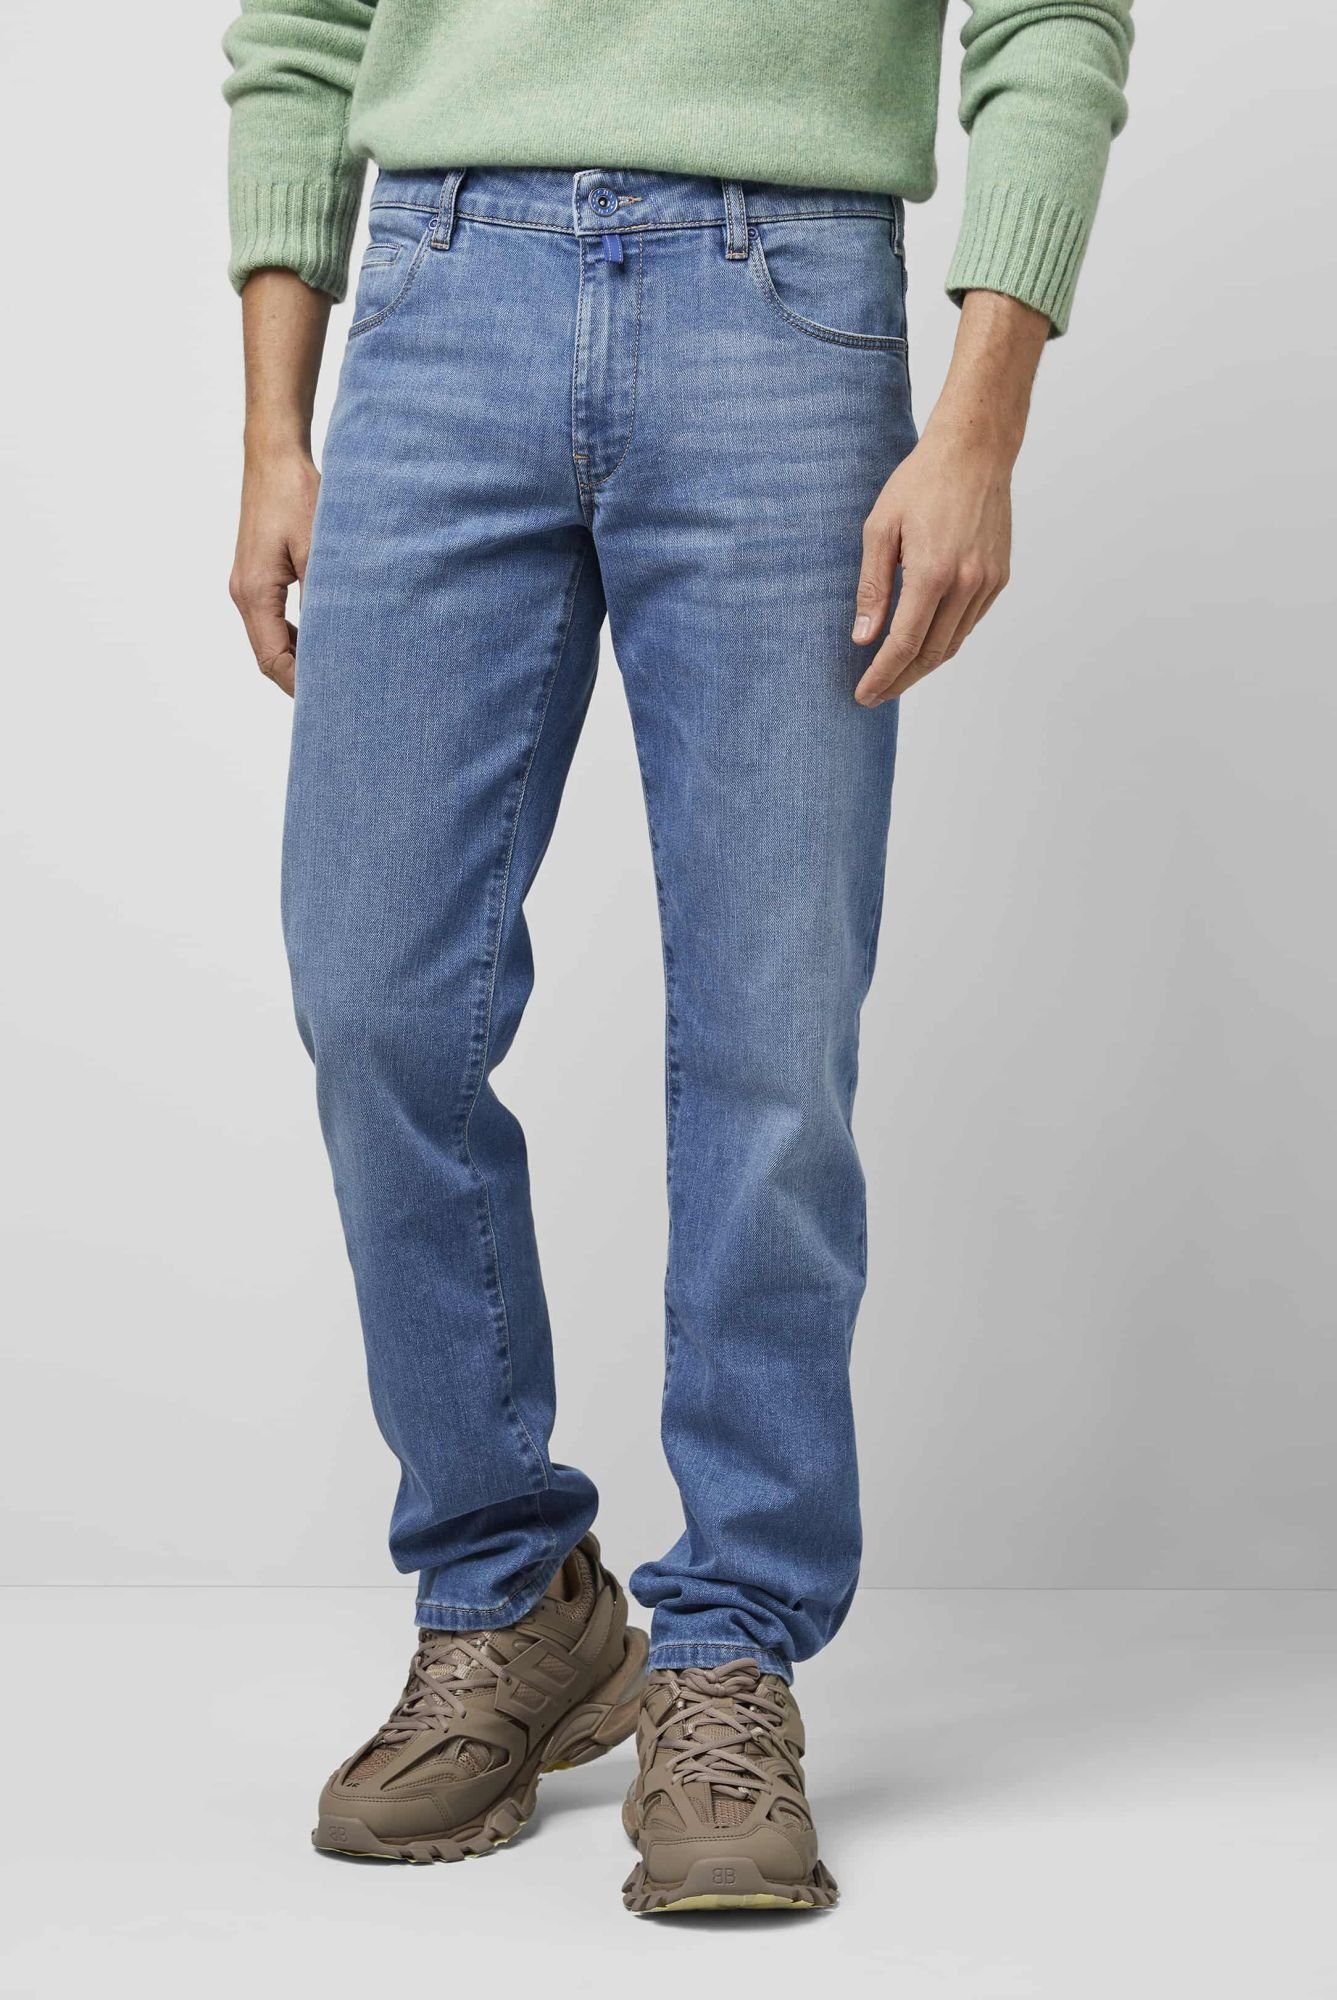 Style Five Fit im Jeans blau Regular-fit-Jeans MEYER Pocket Regular M5 6209